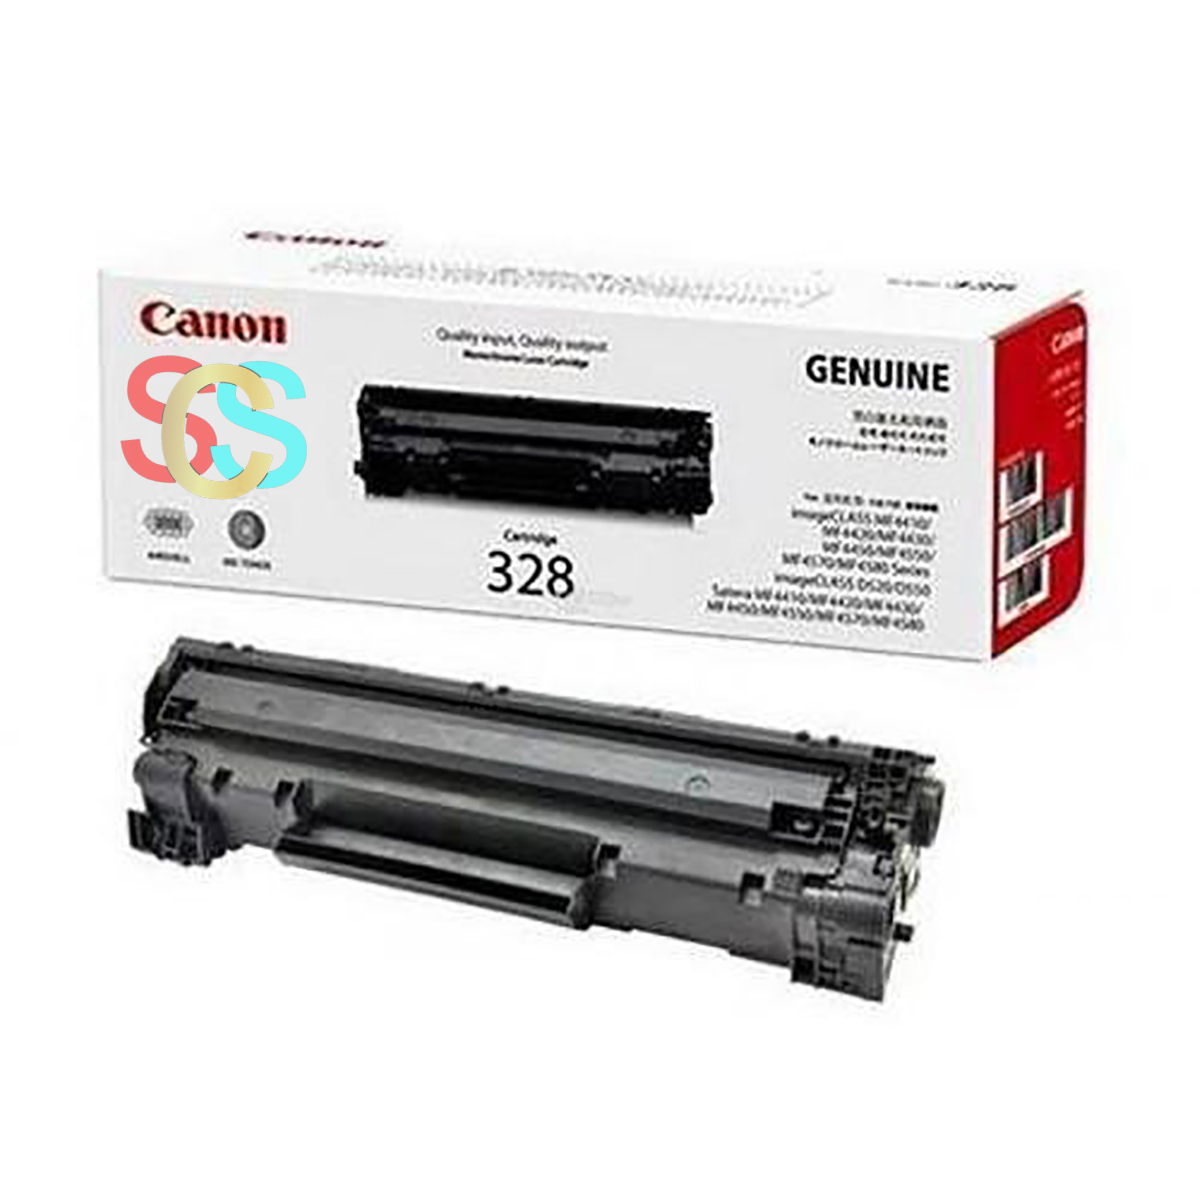 Canon FX-328 Toner For Canon Fax Machine